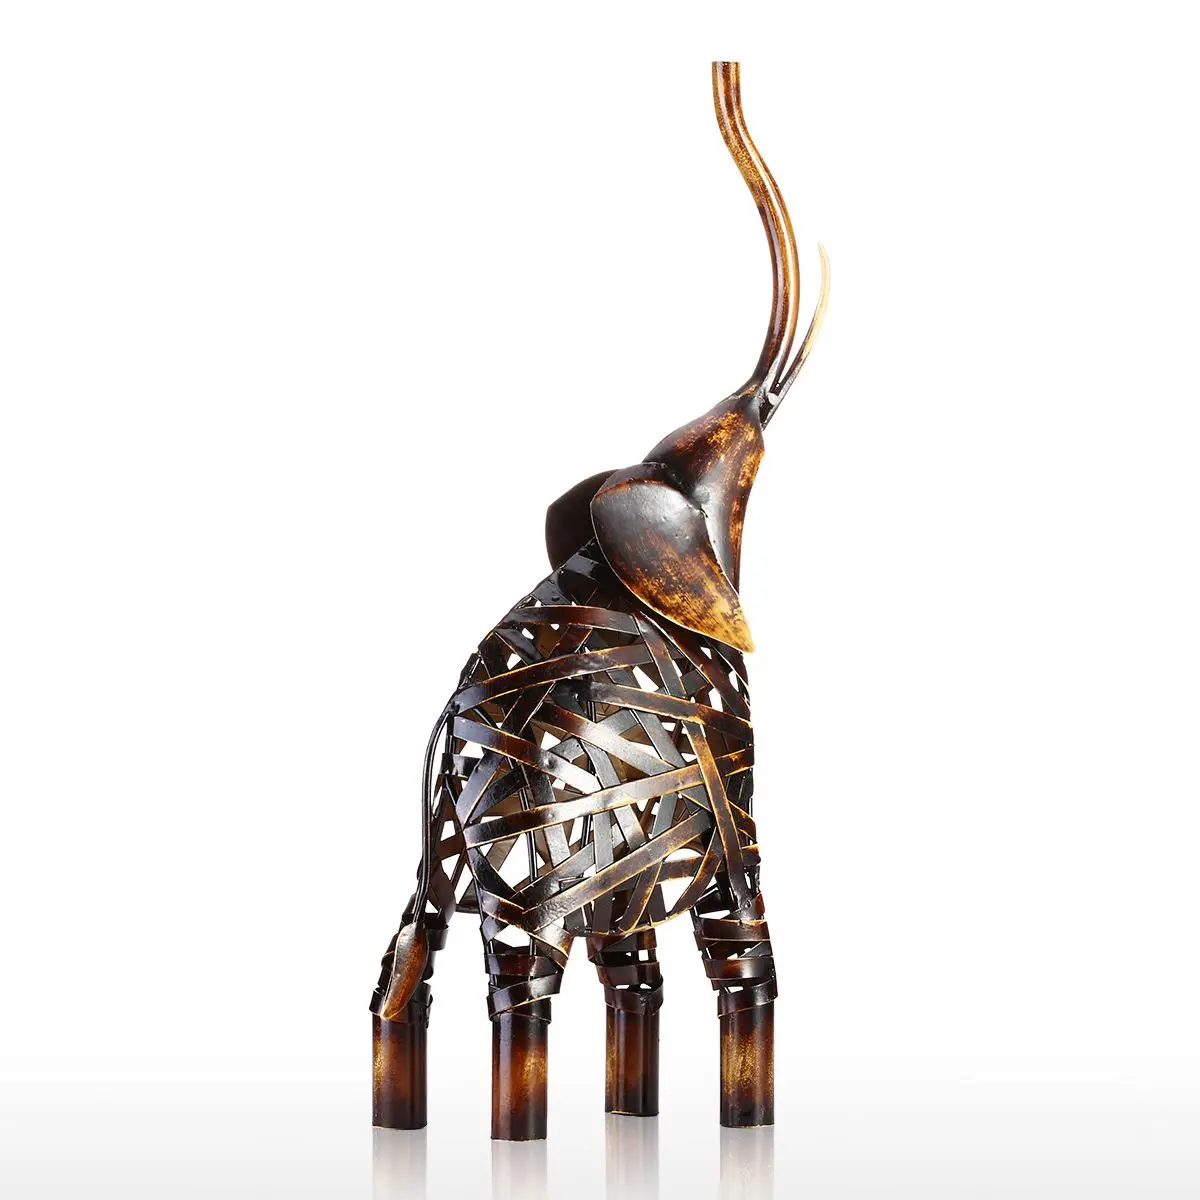 Металлическая скульптура слона ручной работы, скульптура железного слона, украшение для дома, скульптура животного, декоративная ручная работа